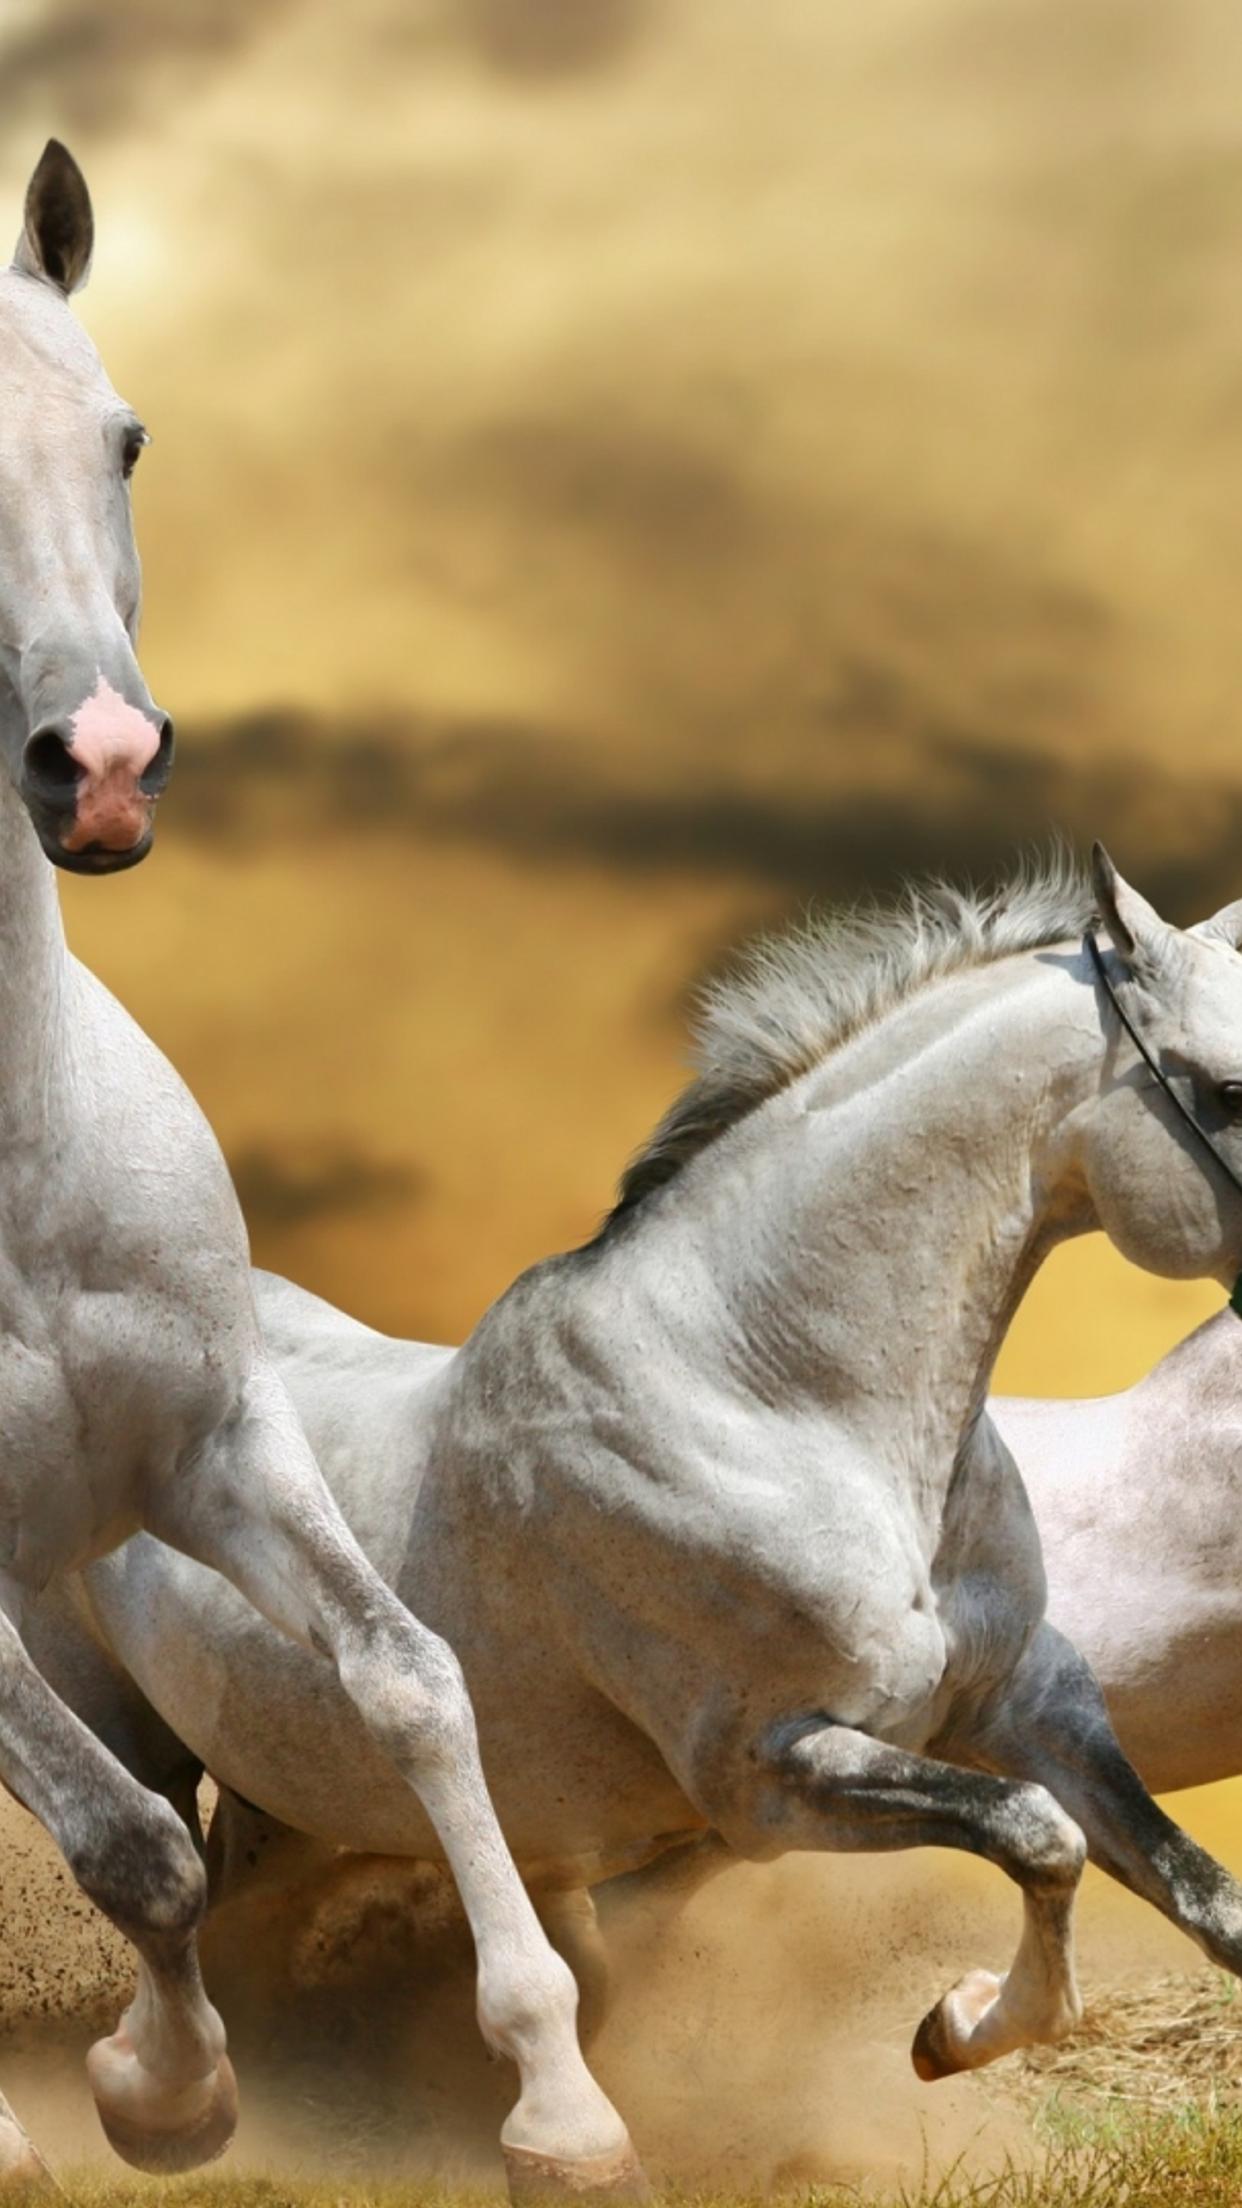 Three beautiful white horses running